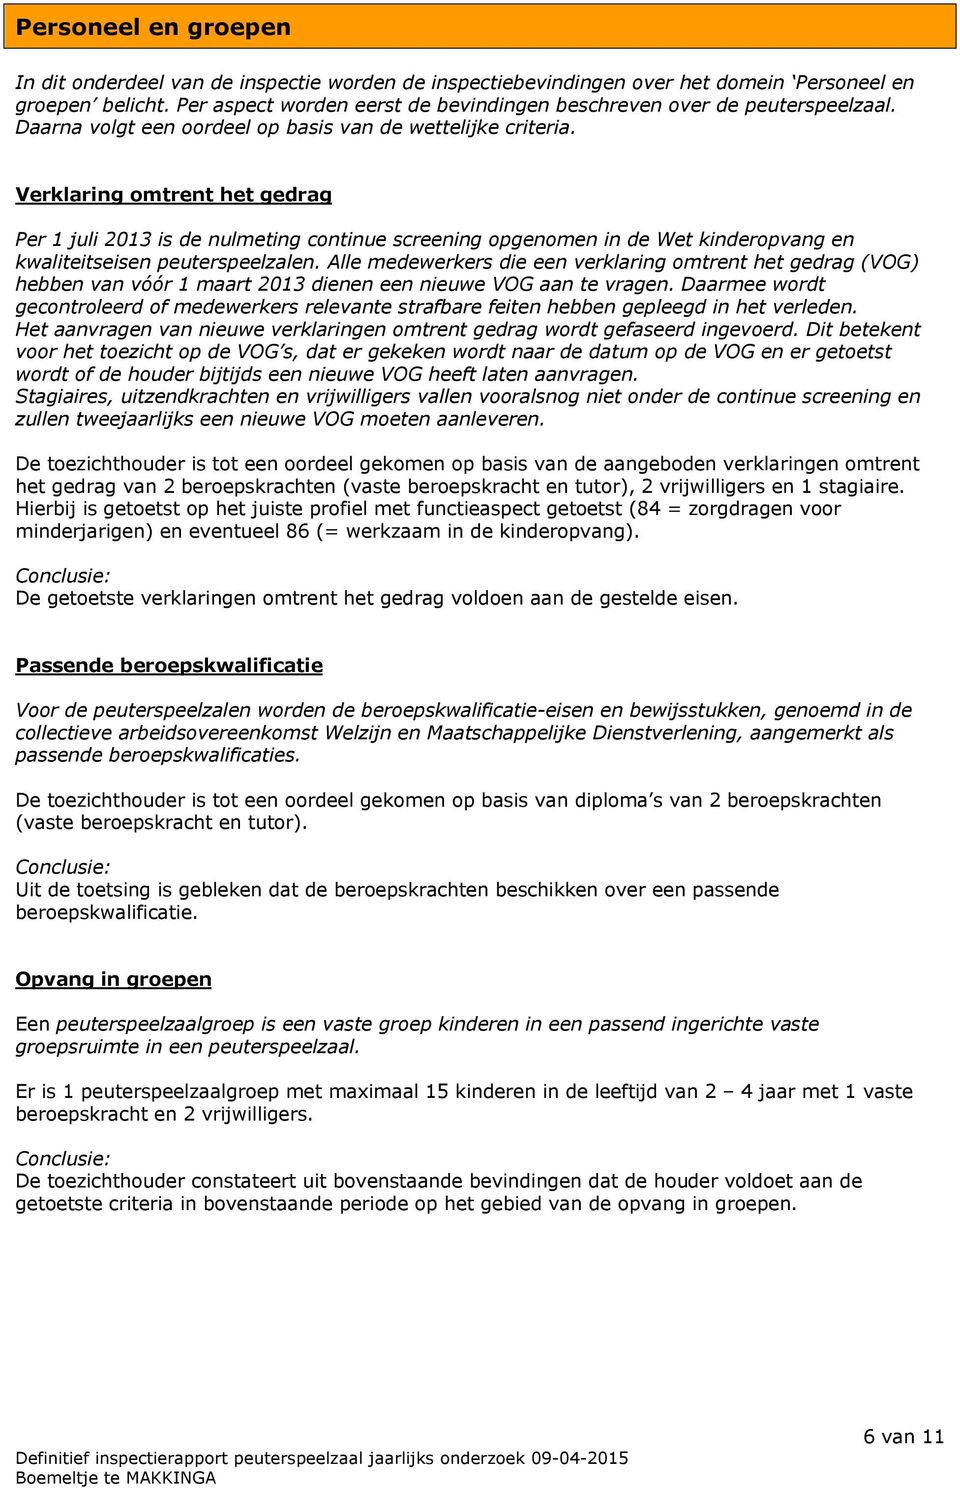 Verklaring omtrent het gedrag Per 1 juli 2013 is de nulmeting continue screening opgenomen in de Wet kinderopvang en kwaliteitseisen peuterspeelzalen.